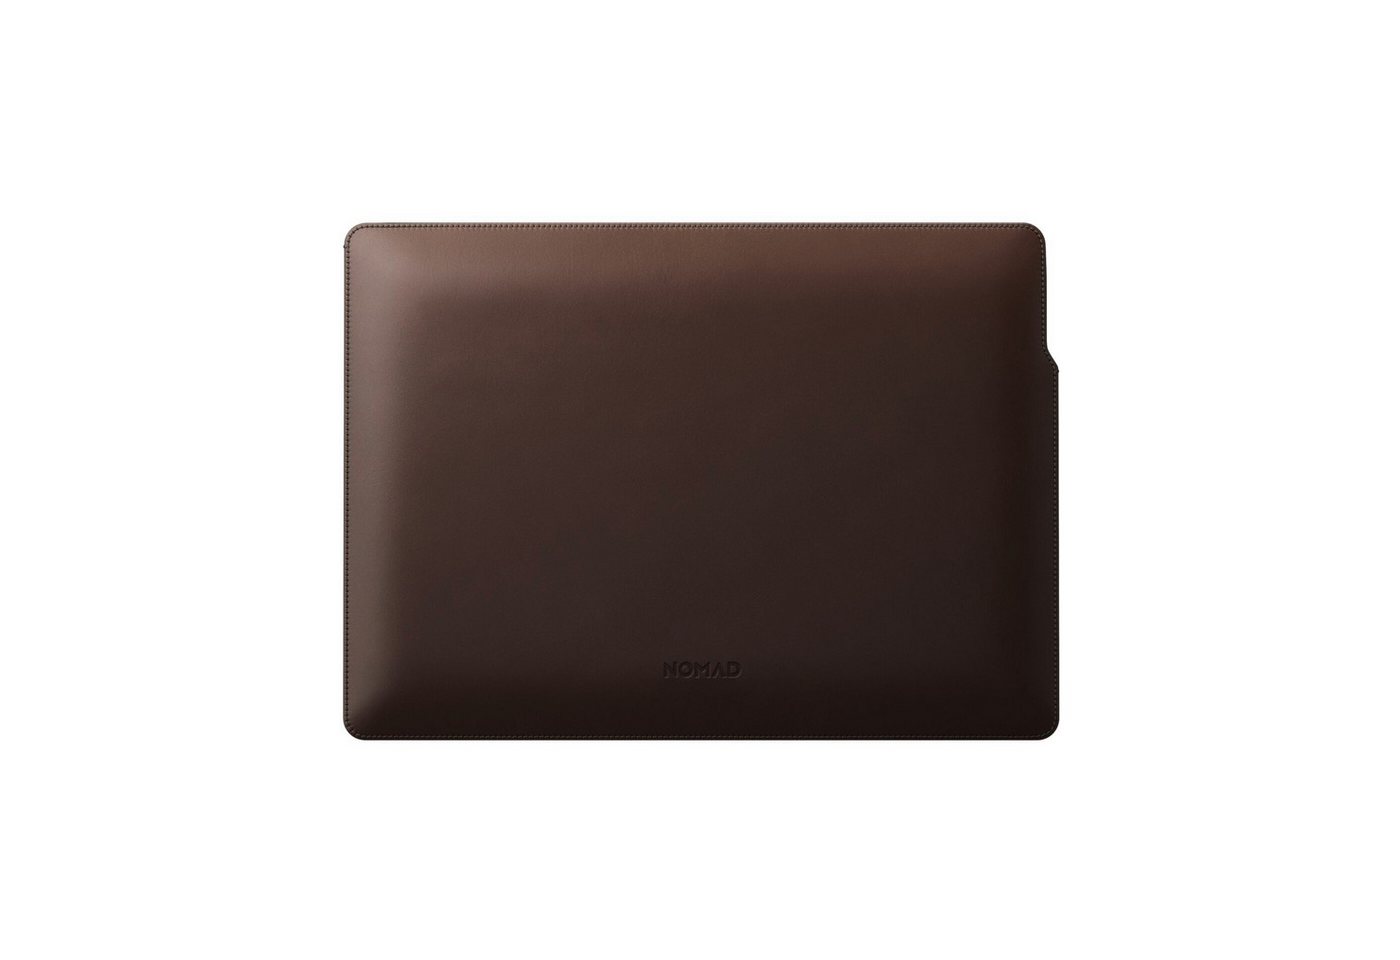 Nomad Laptoptasche Nomad Sleeve für MacBook Pro 13-Inch - Rustic Brown Leather von Nomad